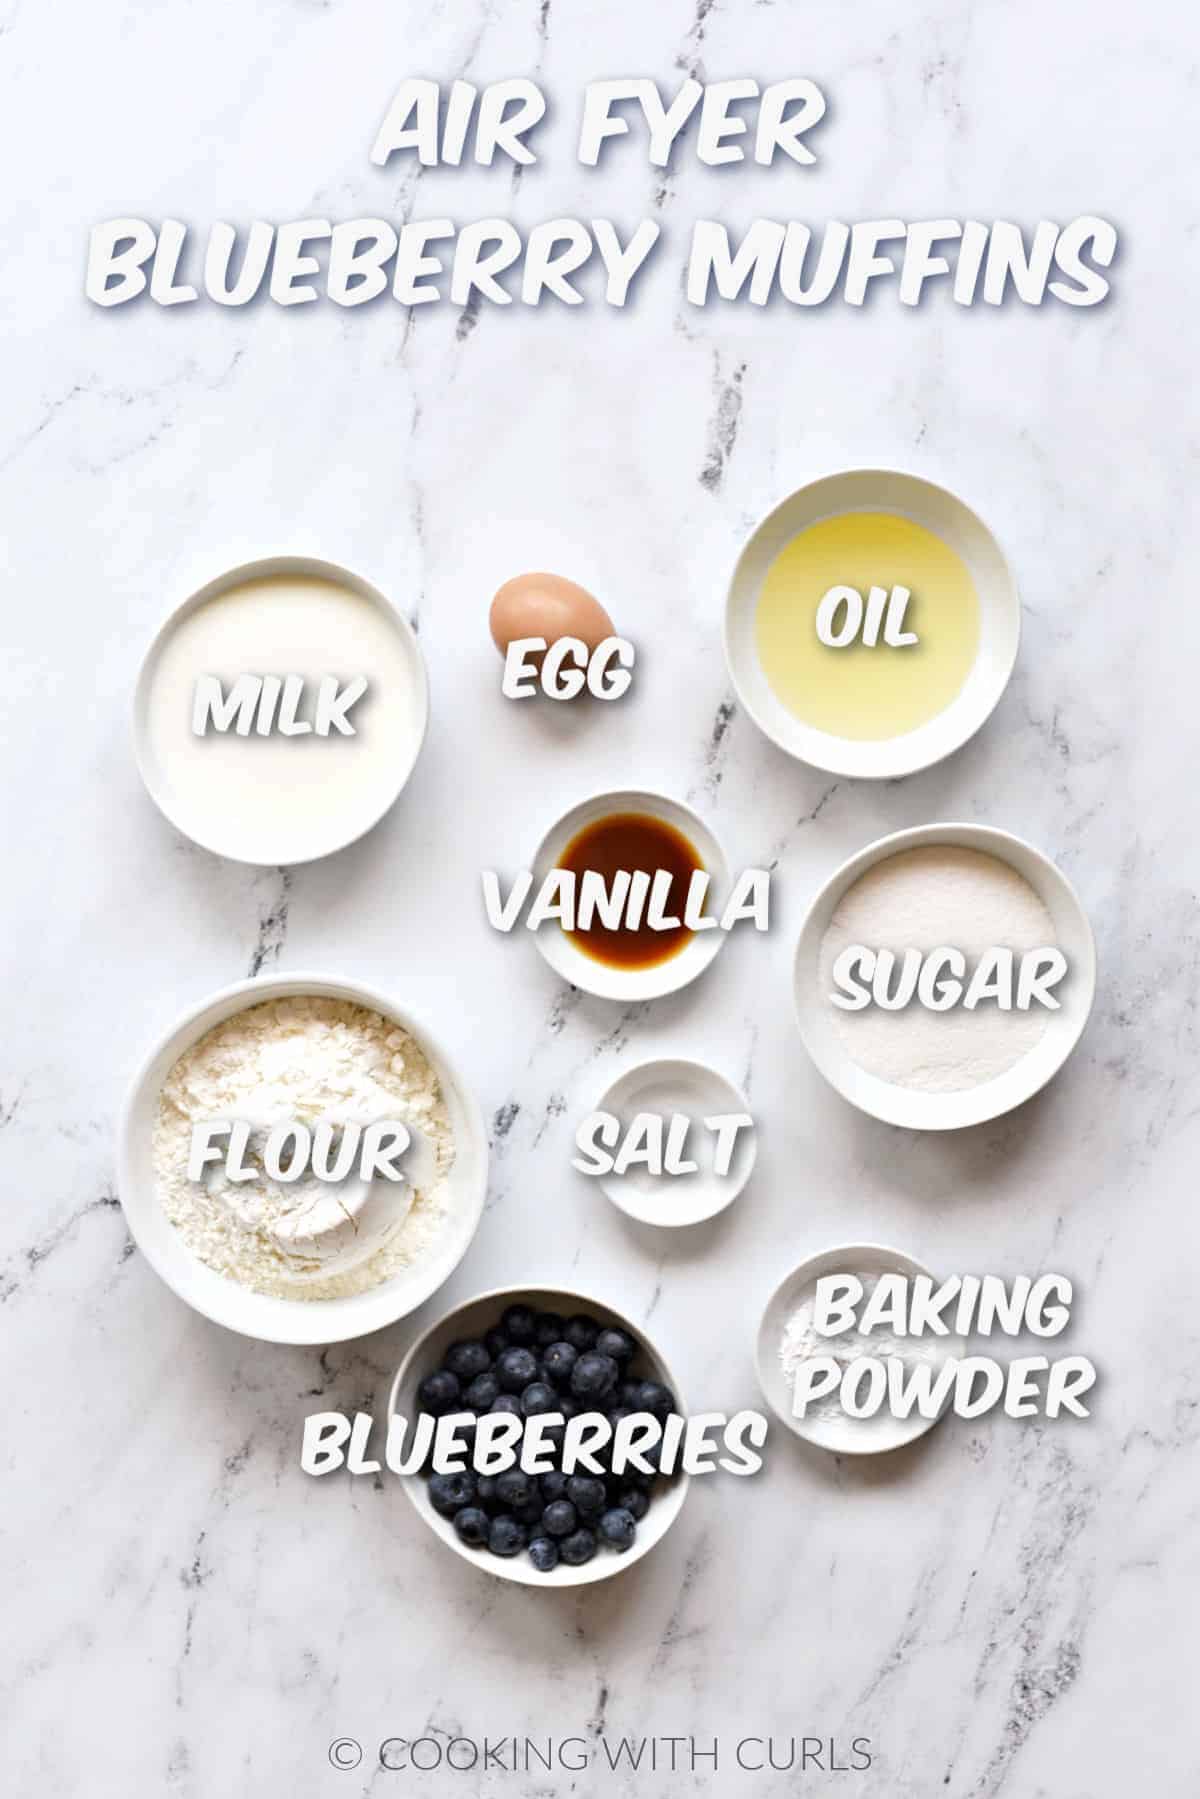 Milk, egg, oil, vanilla, sugar, flour, baking powder, salt, and blueberries in white bowls. 